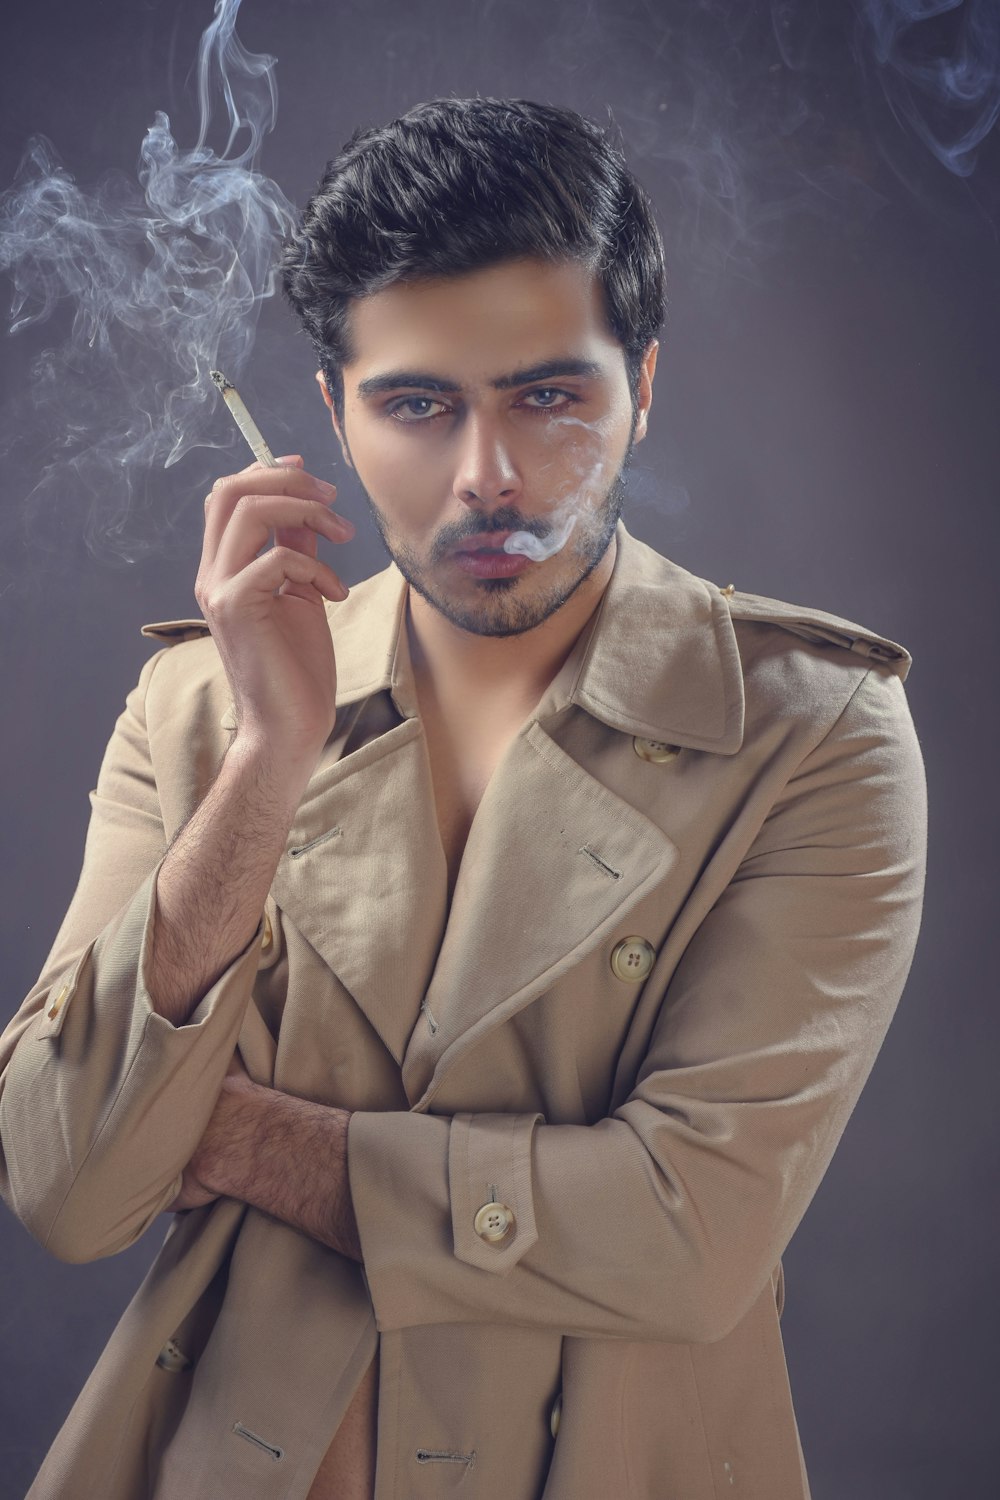 갈색 가죽 재킷을 피우는 남자 흡연 담배